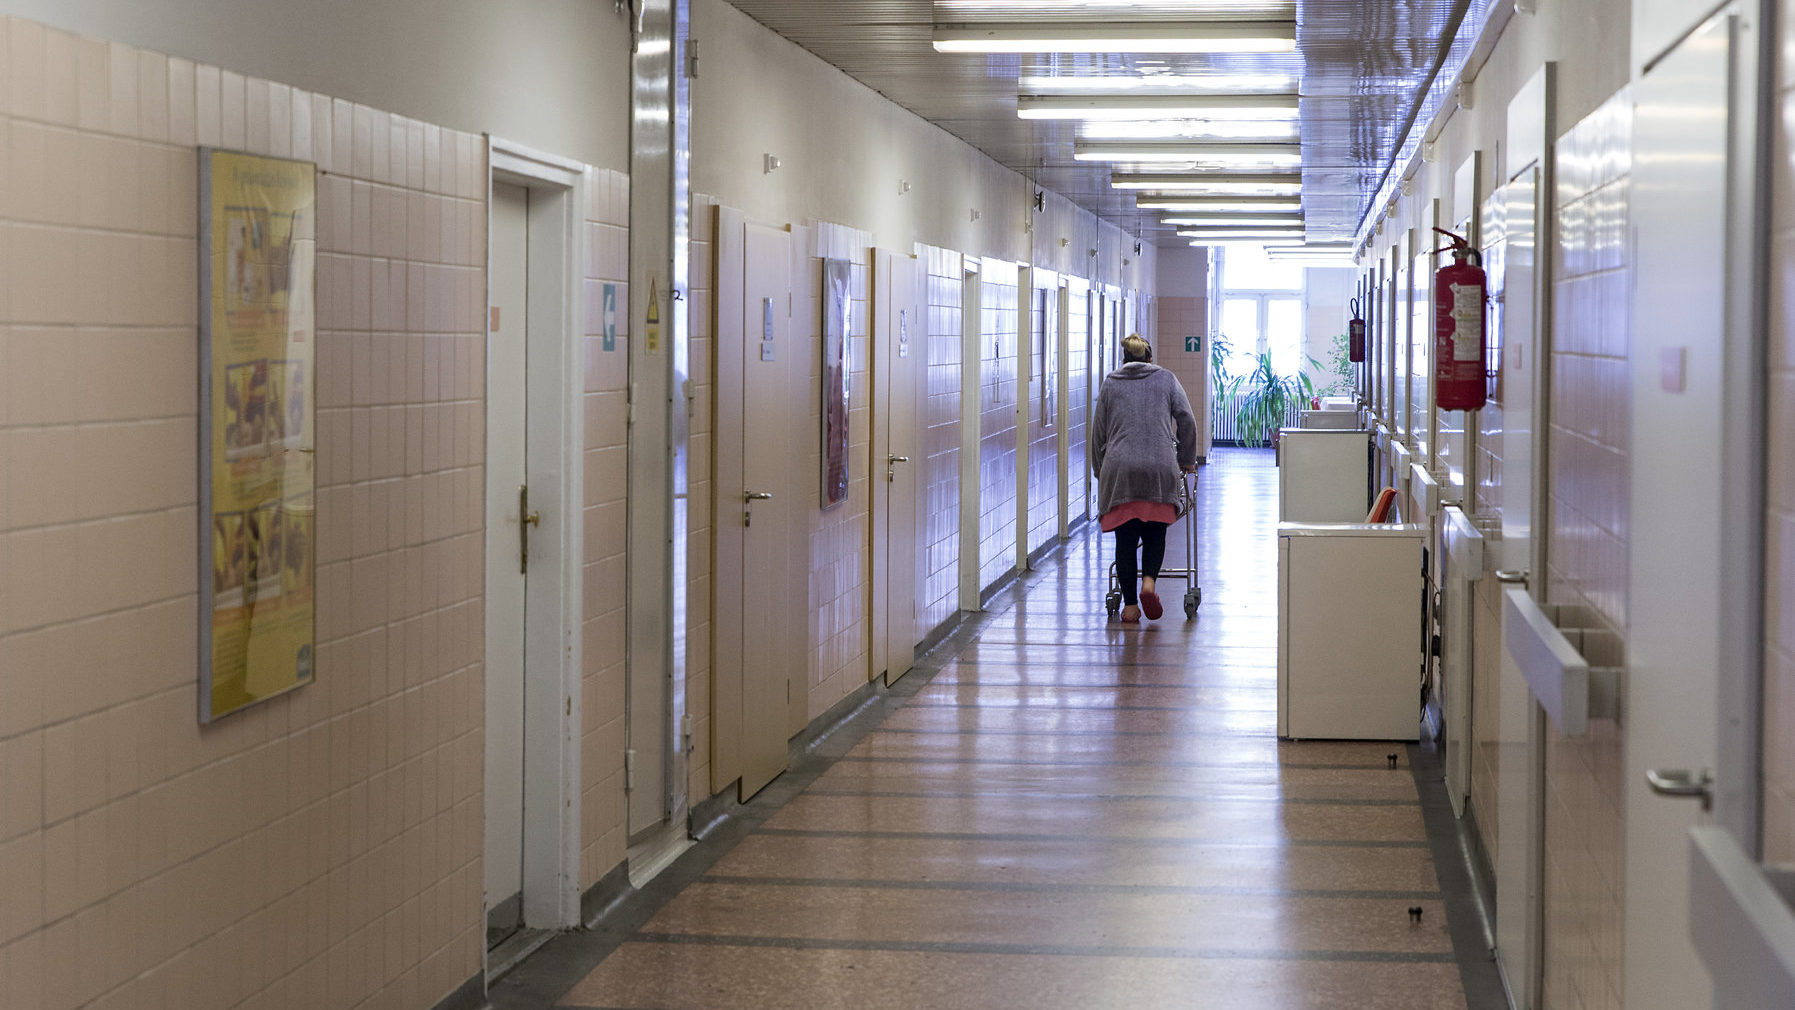 Közel telt házas koronavírusos betegekkel a győri kórház egy ott dolgozó orvos szerint